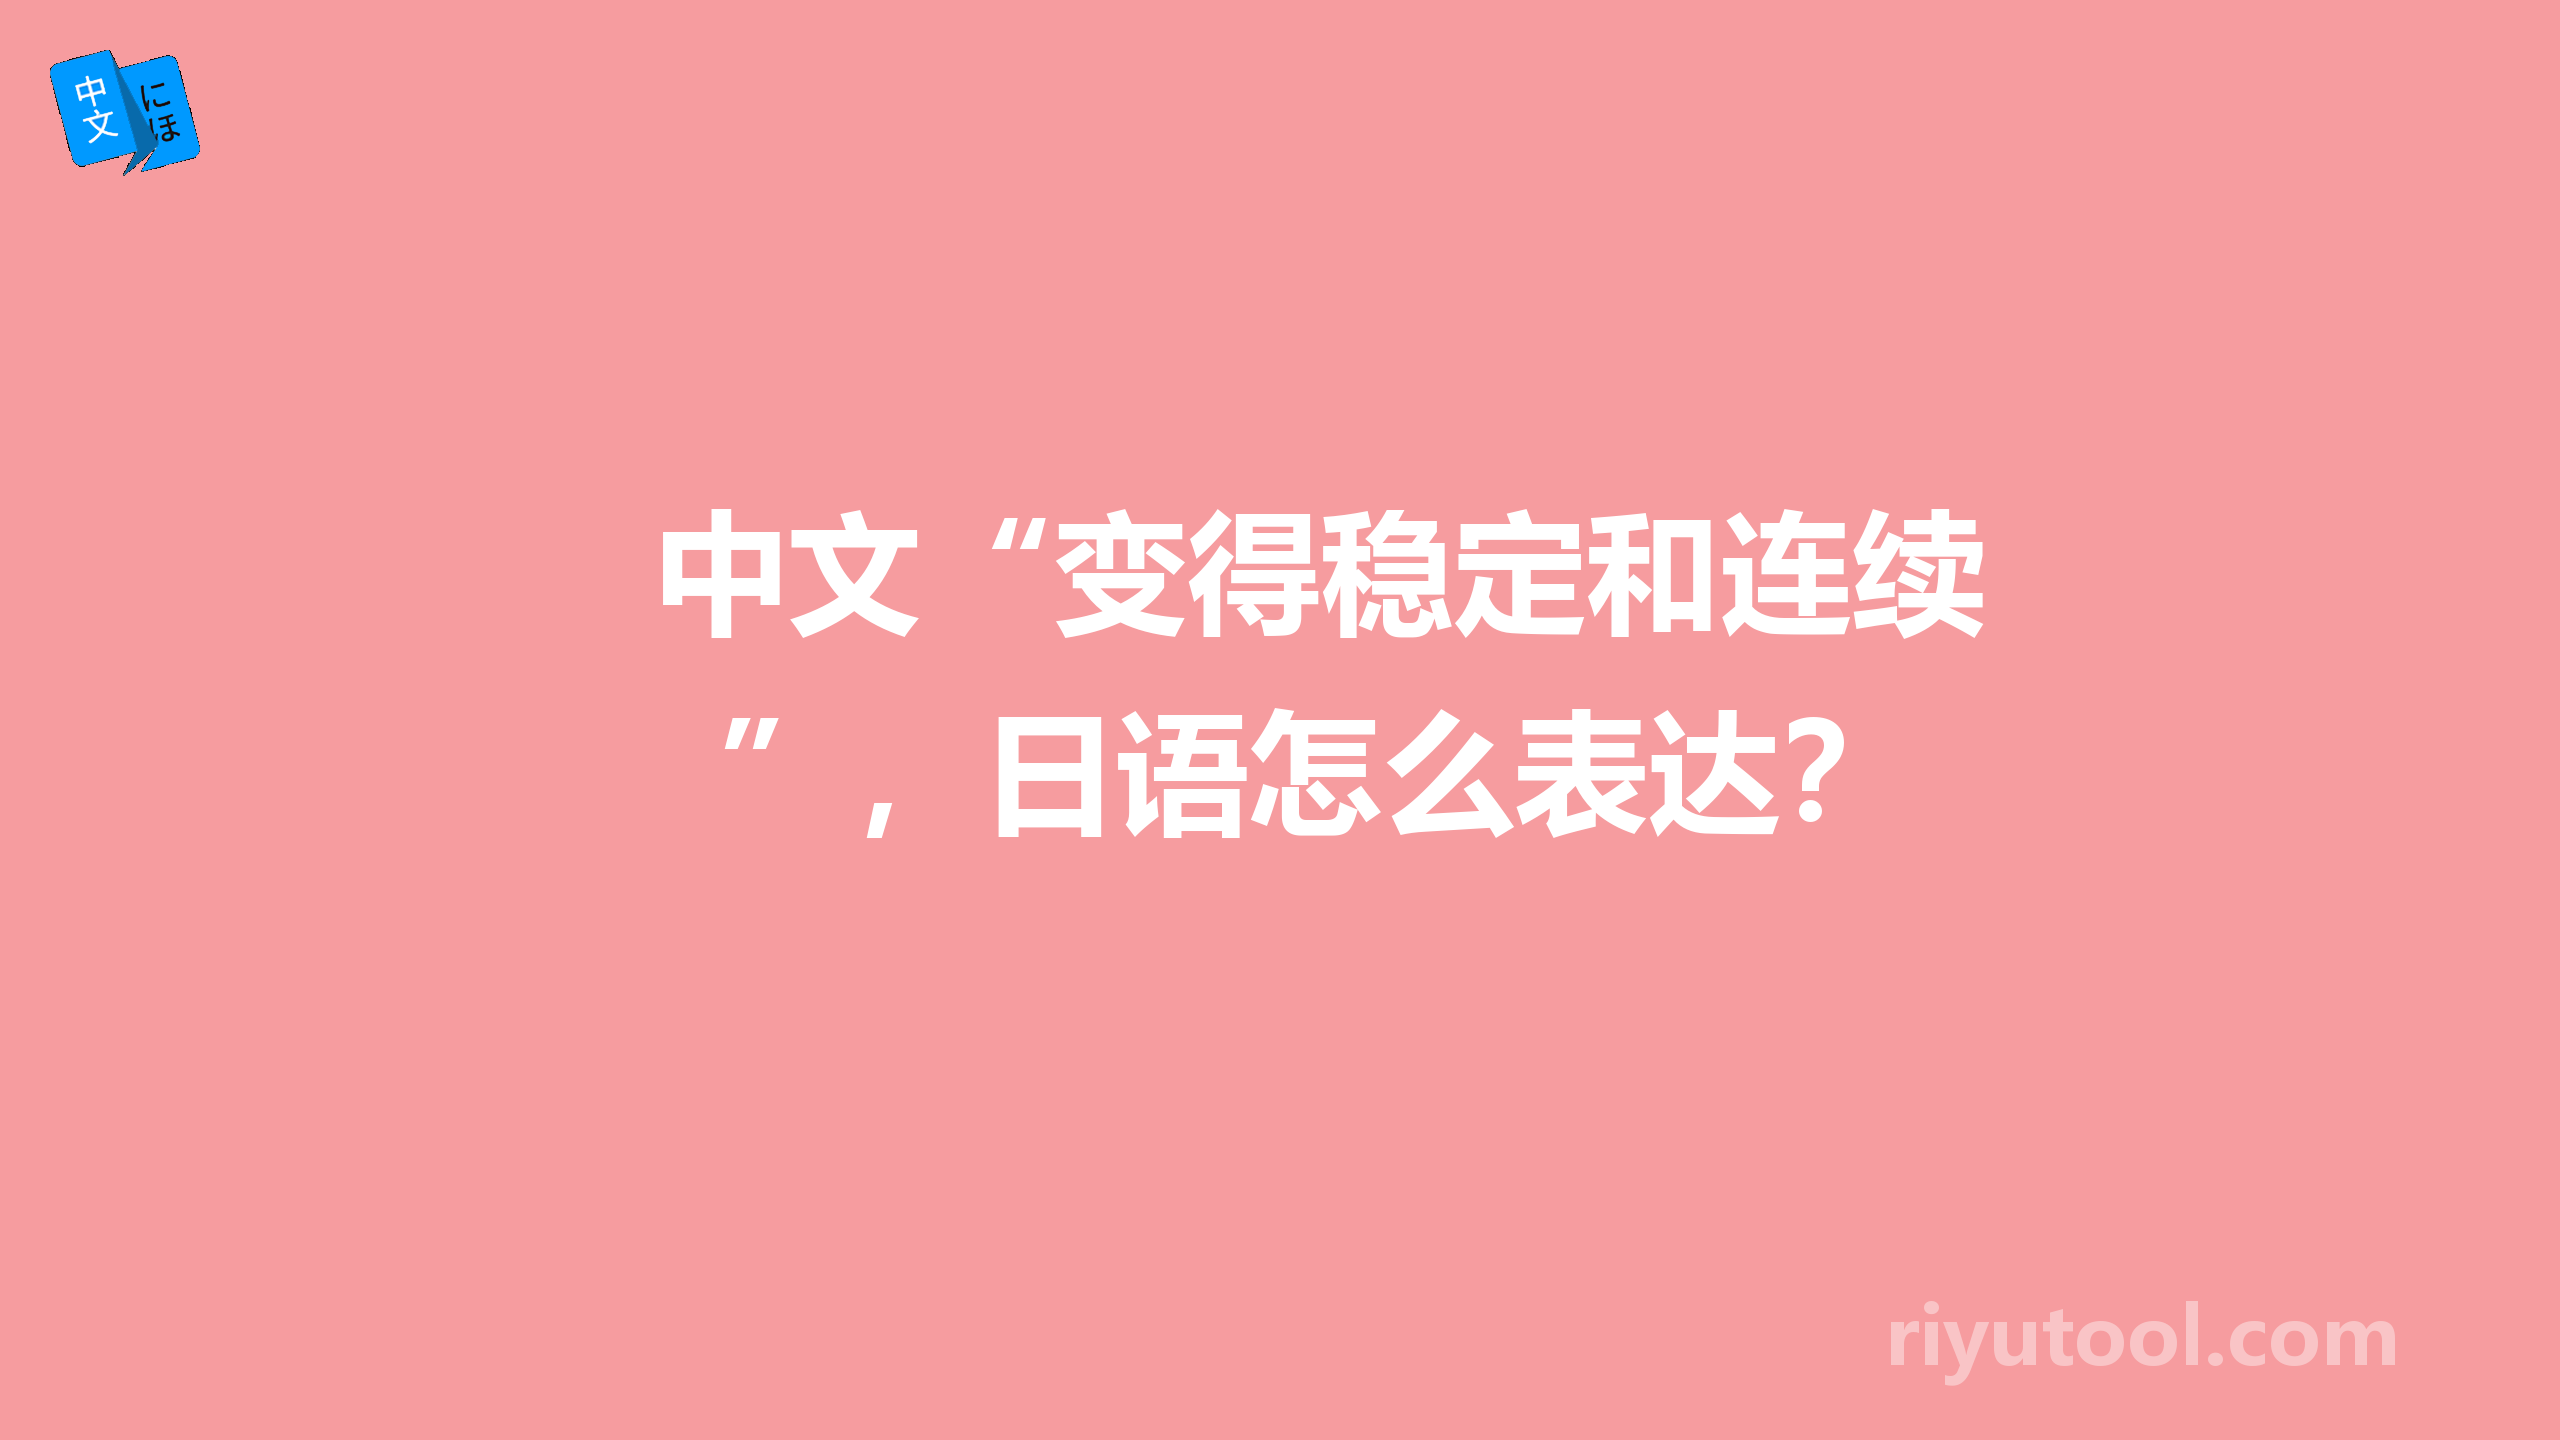 中文“变得稳定和连续”，日语怎么表达？